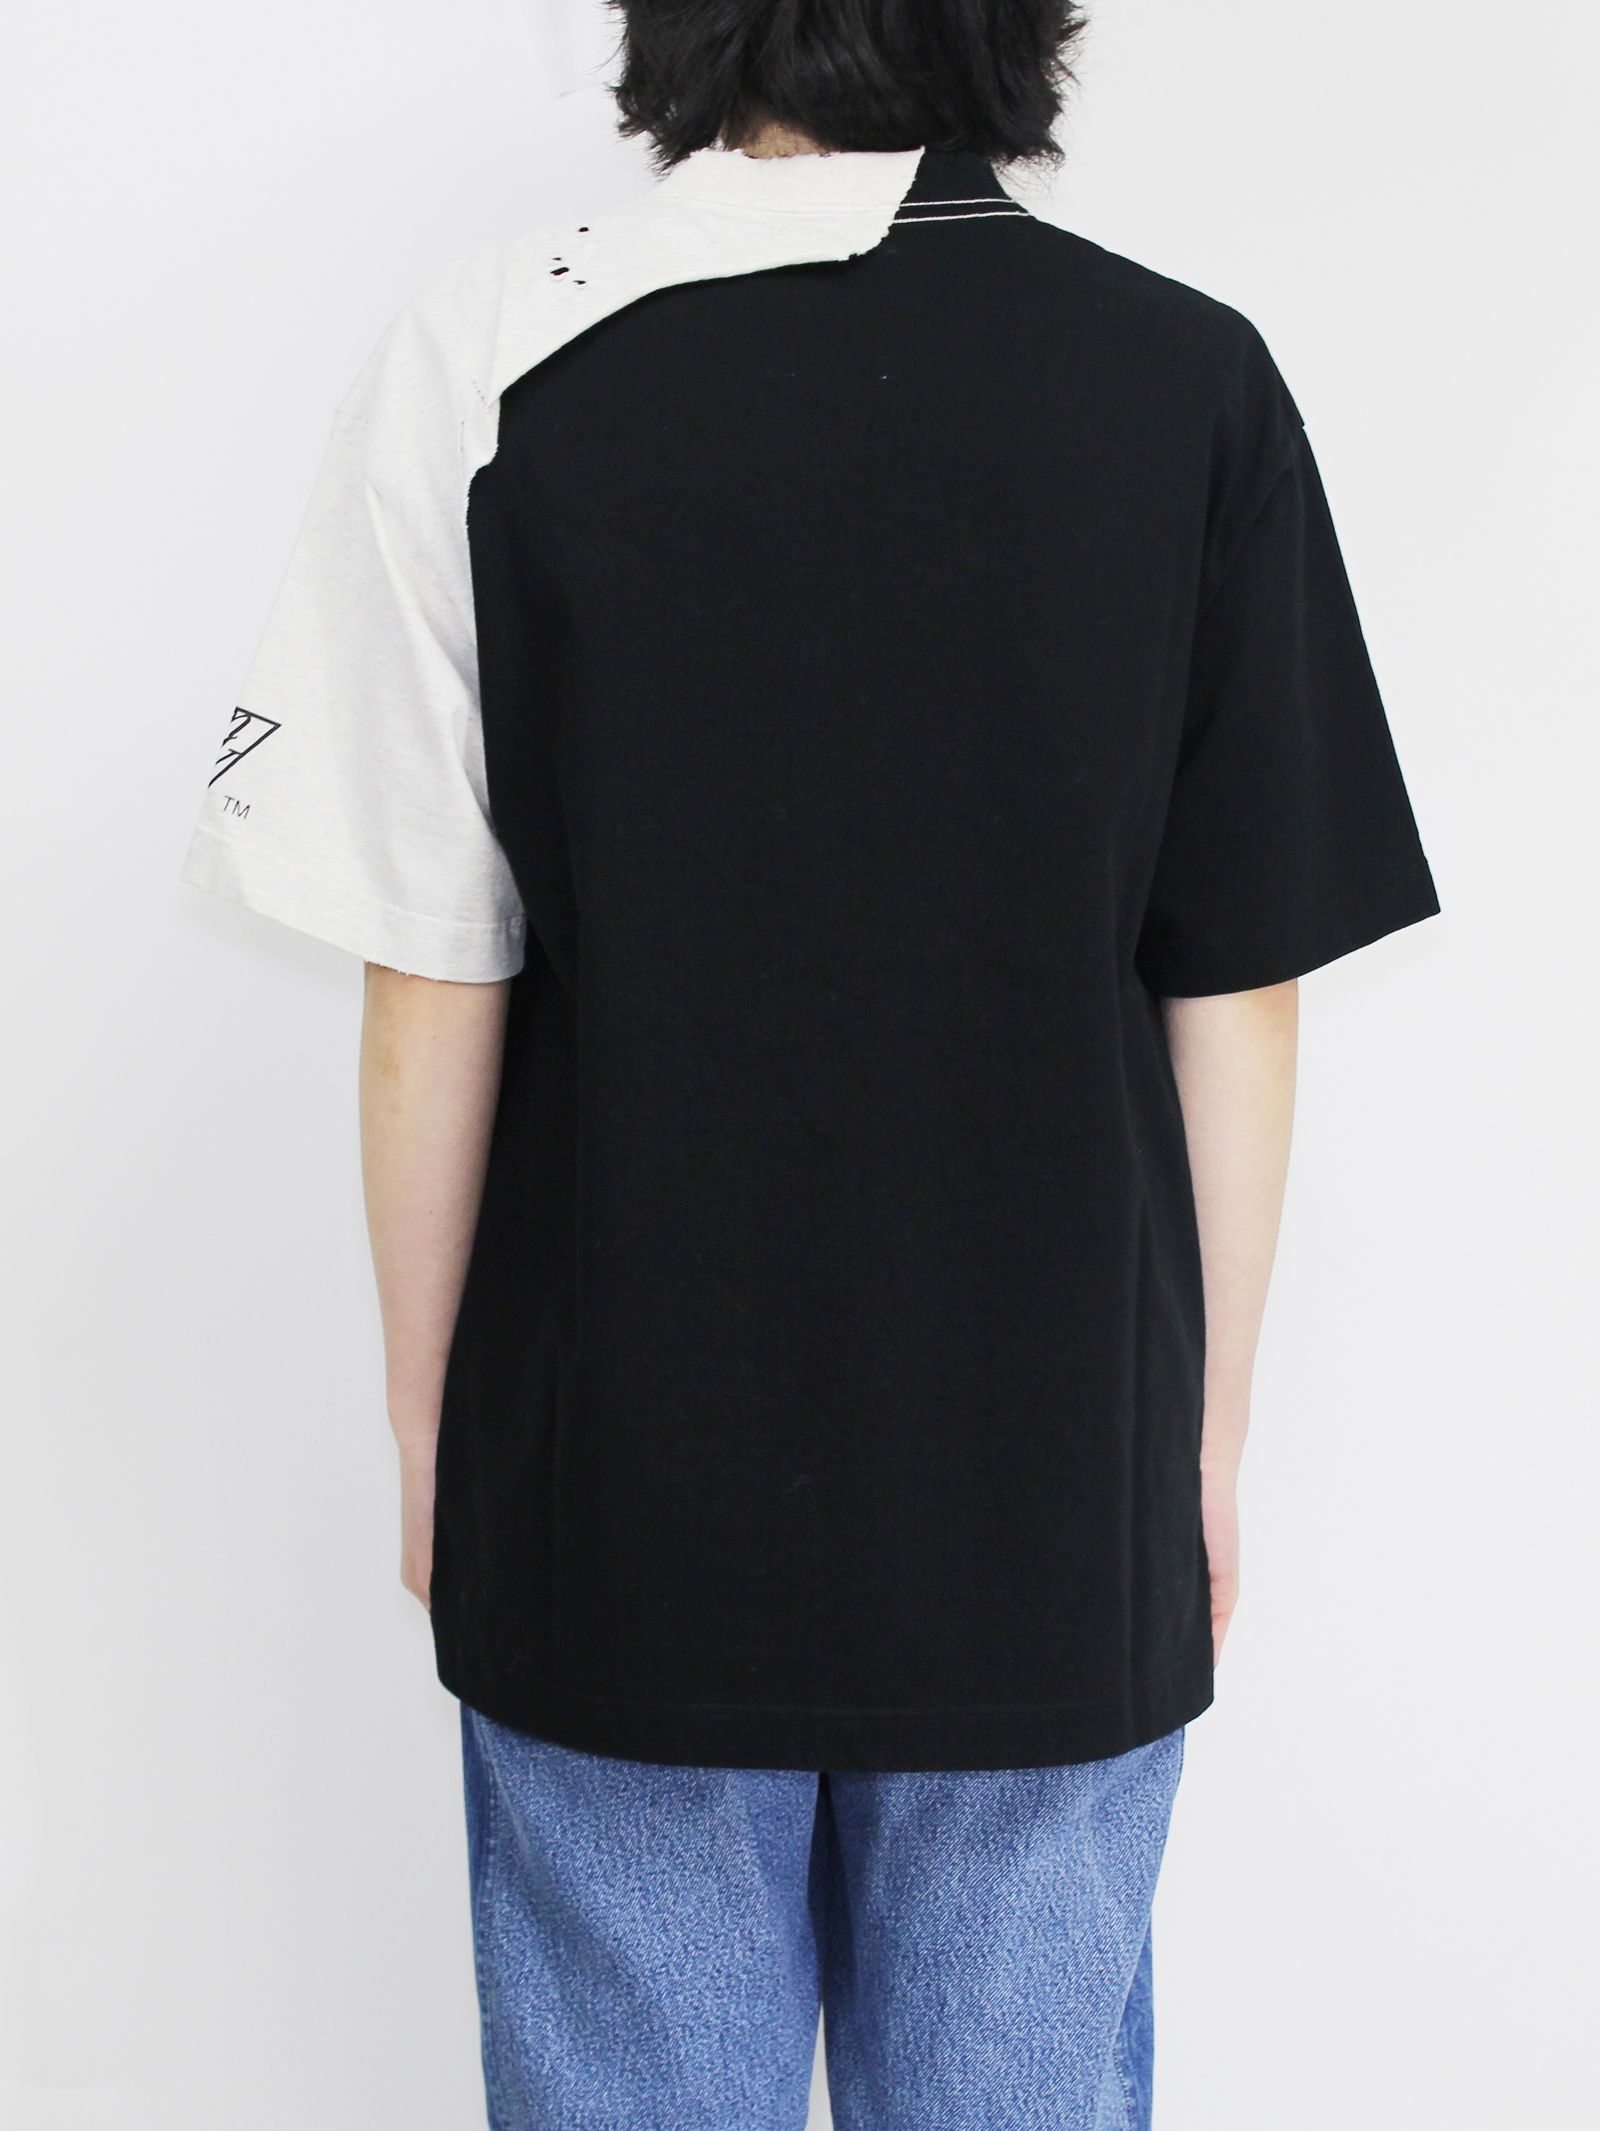 Maison MIHARA YASUHIRO - レイヤードティーシャツ - layerd T-shirt